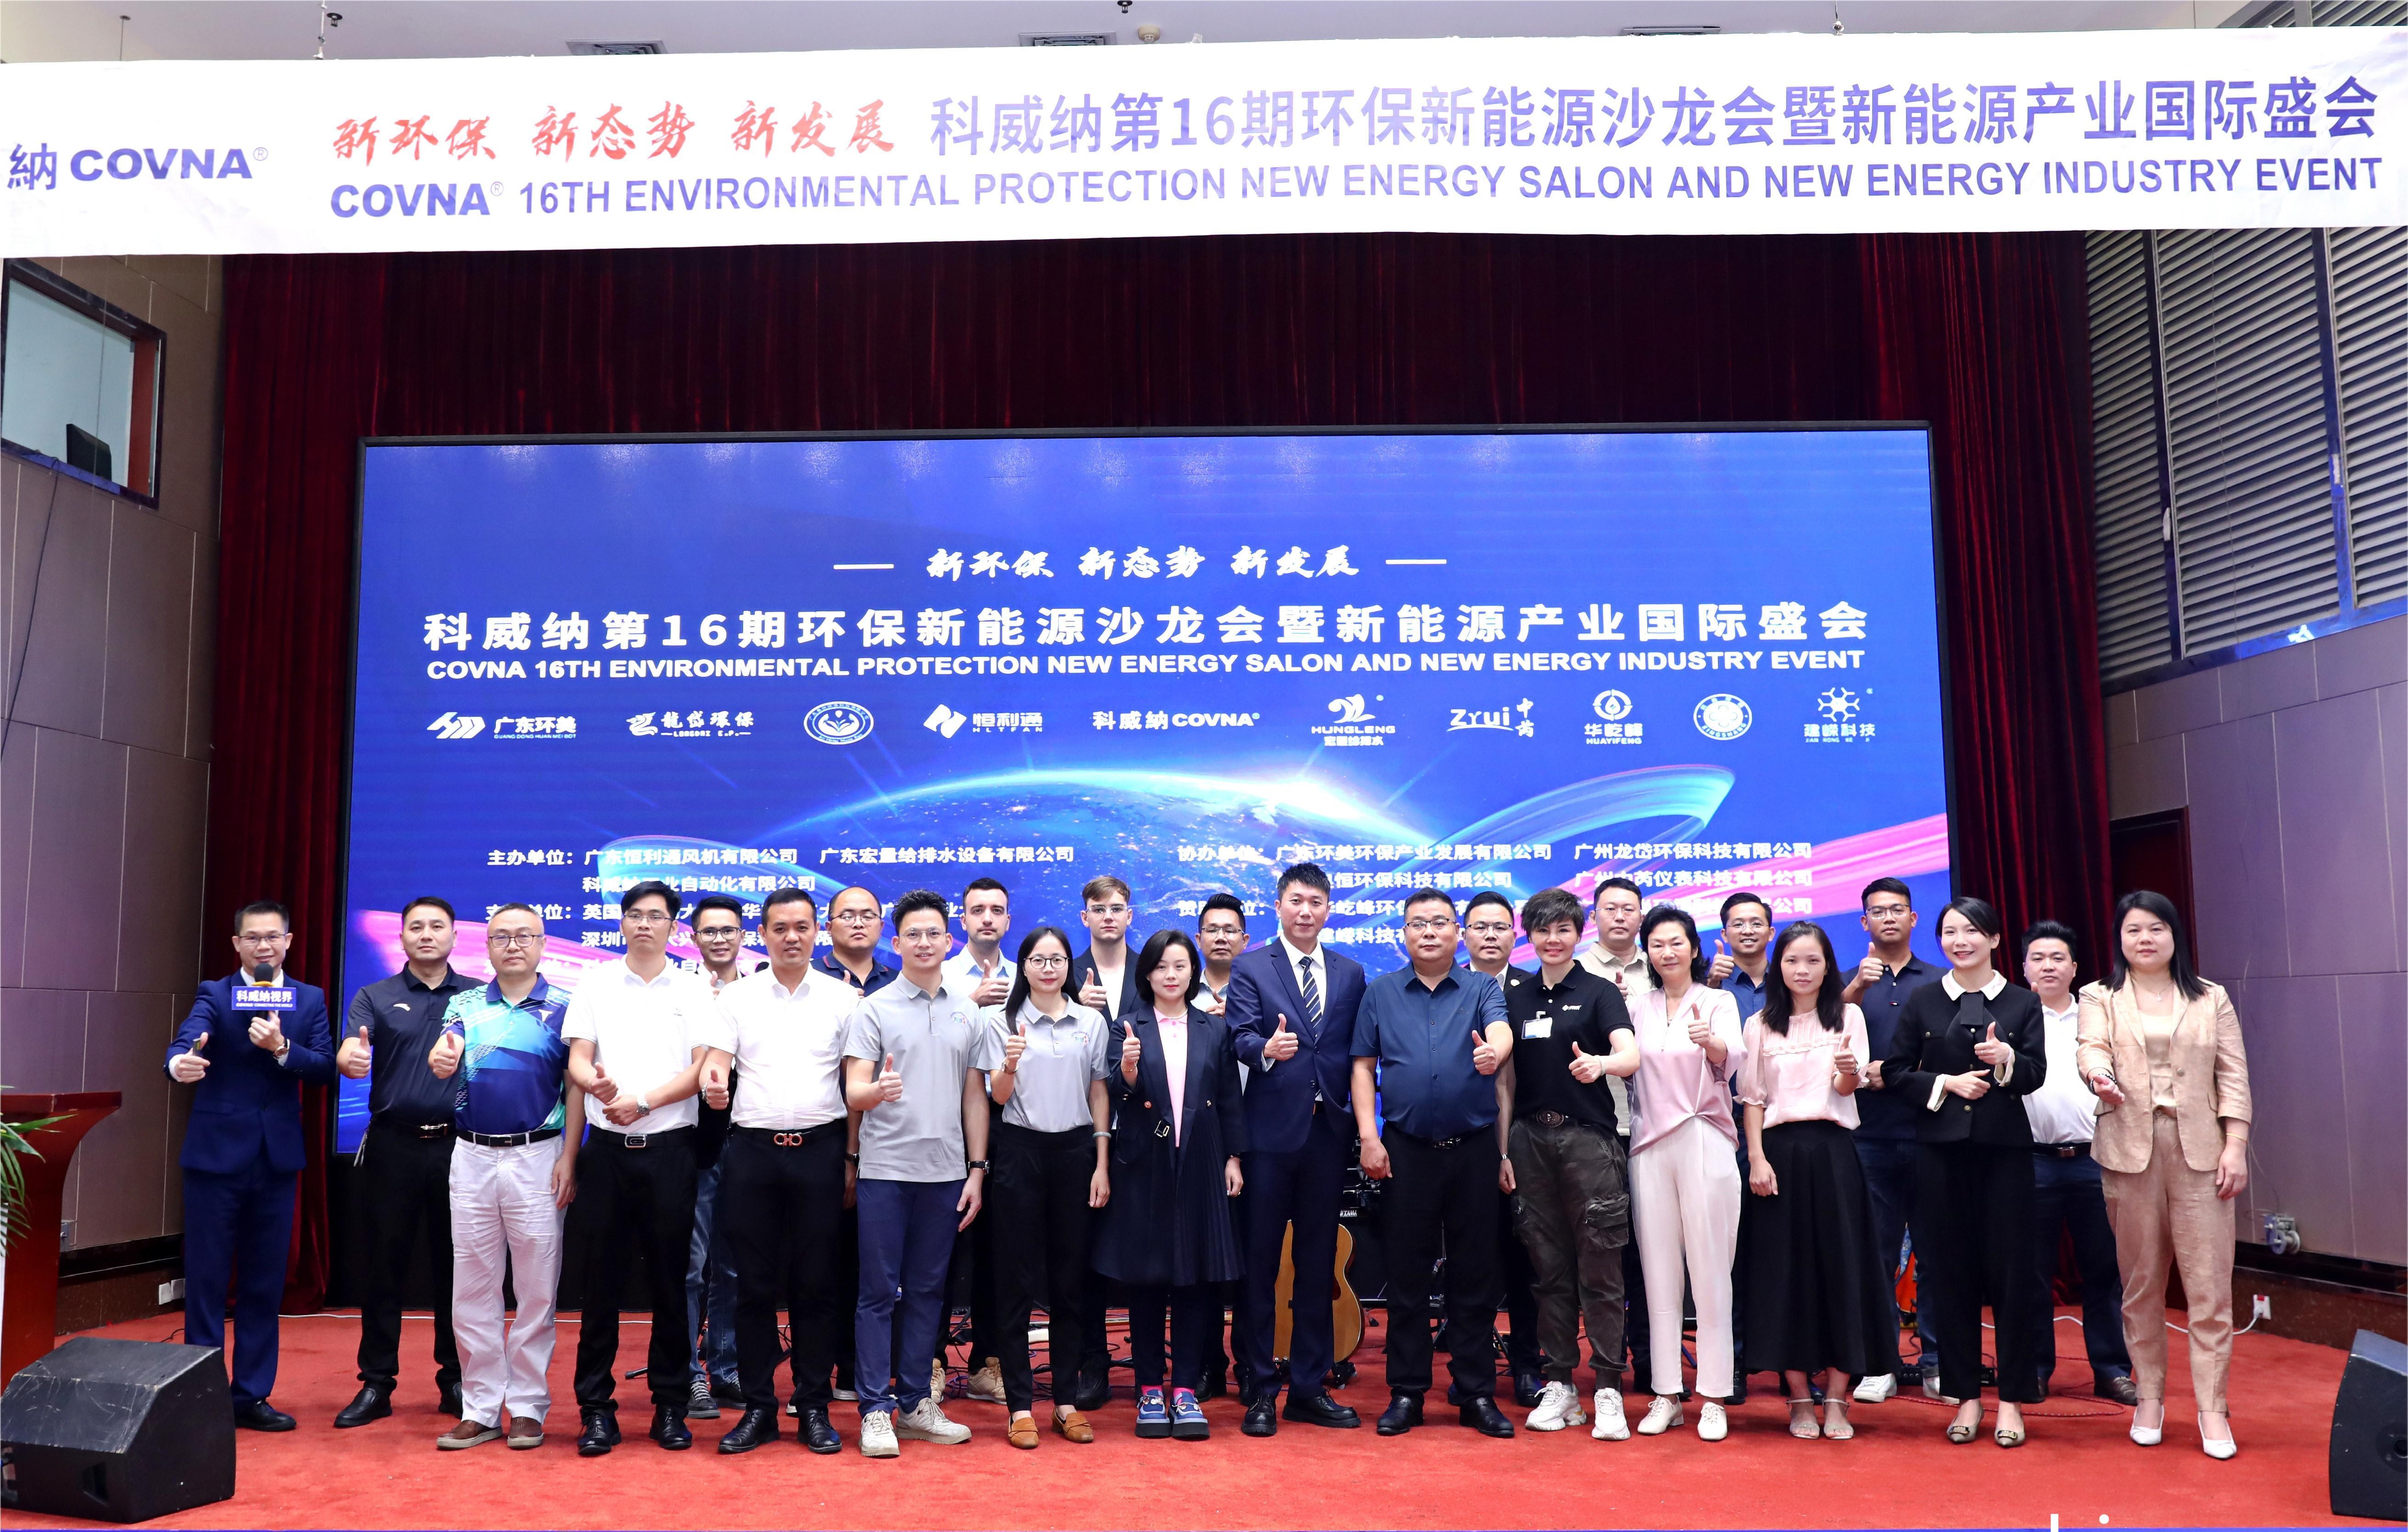 COVNA STARK afholdt med succes konferencen om miljøbeskyttelse og energibesparelse i Guangzhou